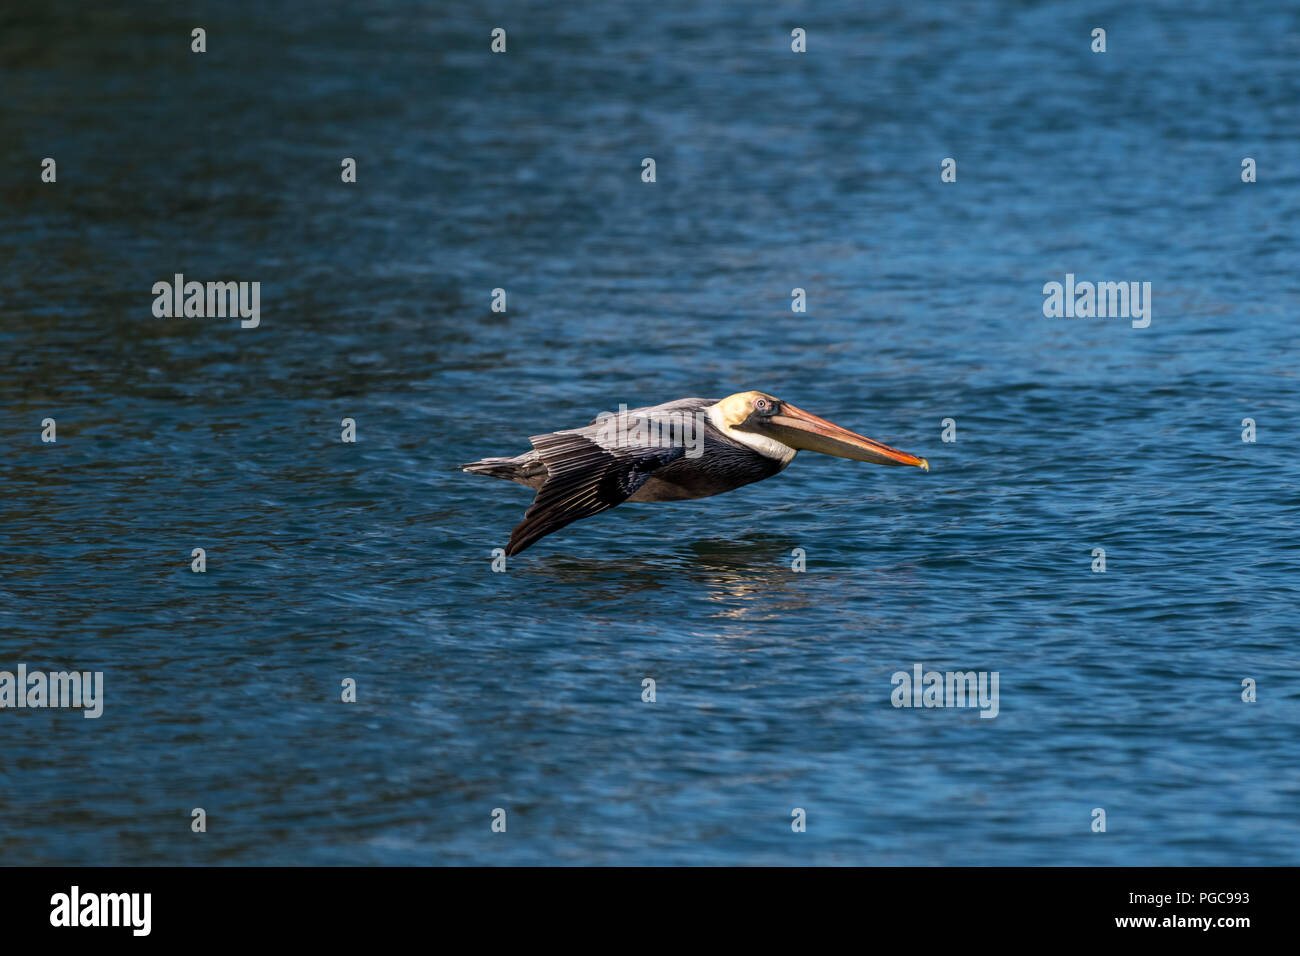 Pellicano marrone (Pelecanus occidentalis) volando a bassa quota sopra l'acqua in Florida, Stati Uniti d'America. Foto Stock